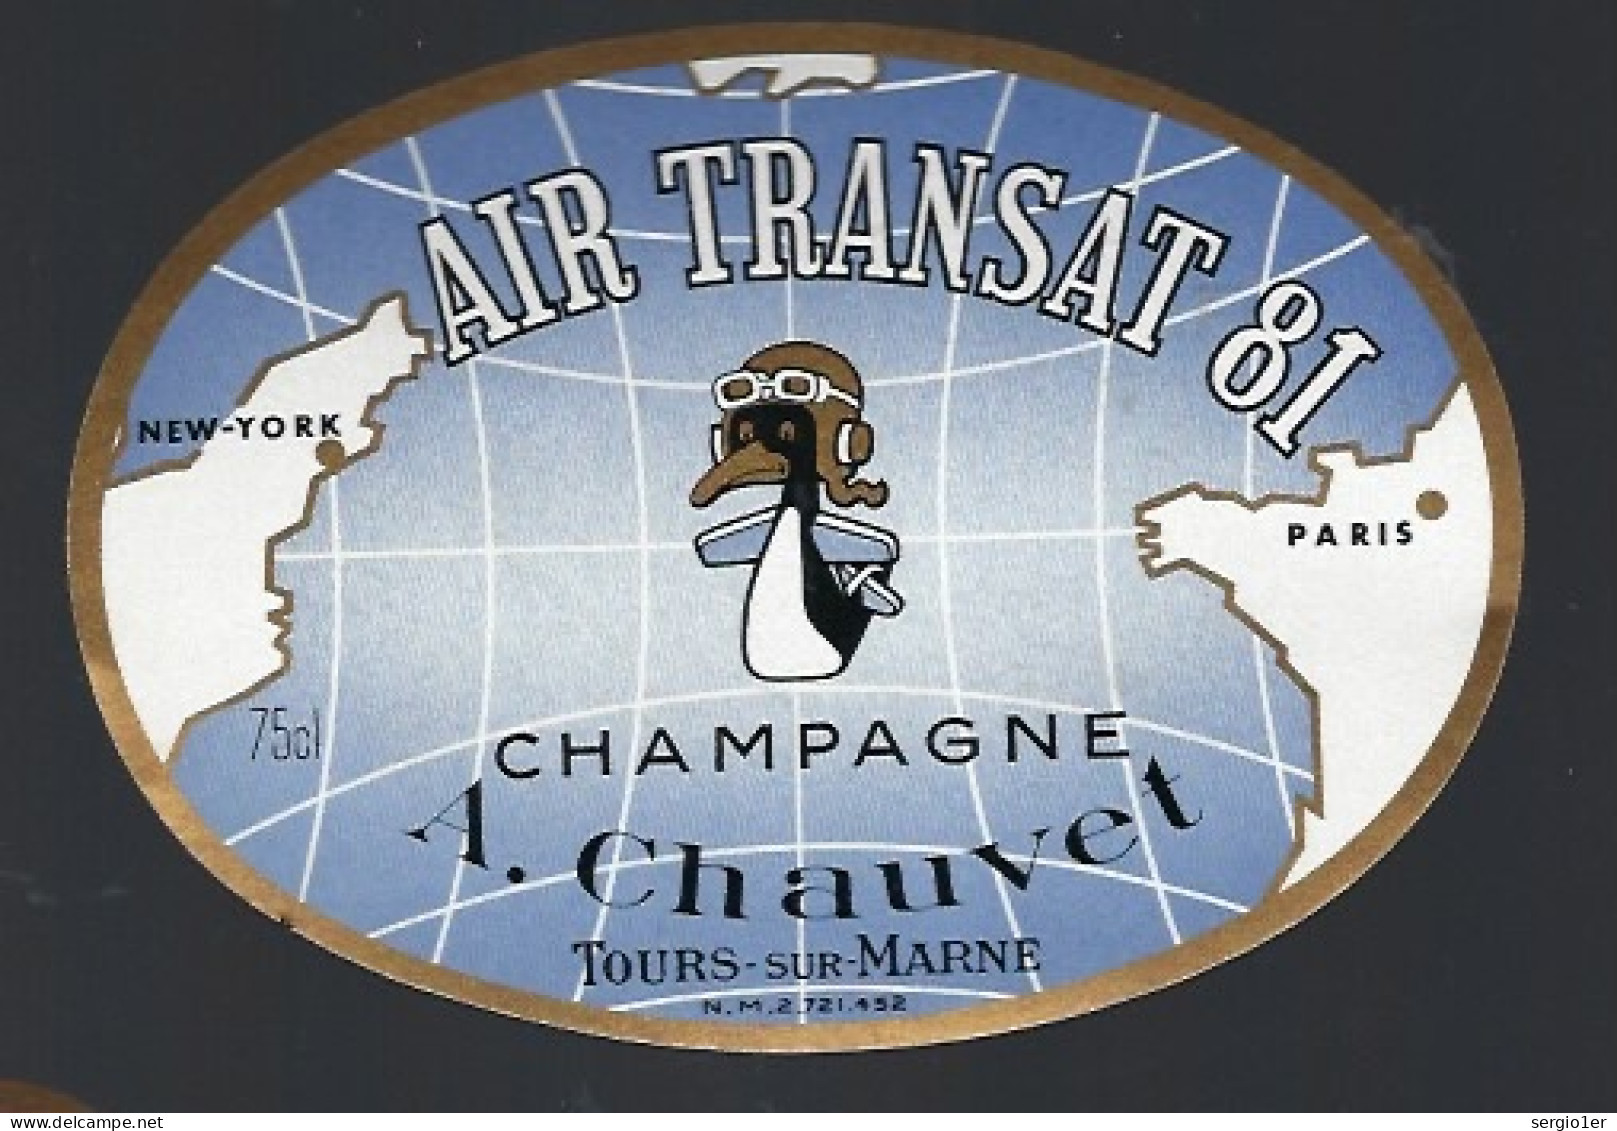 Rare Etiquette Champagne Cuvée Air Transat 81  A Chauvet Tours Sur Marne Marne 51" New York-Paris" Canard Aviation - Champan